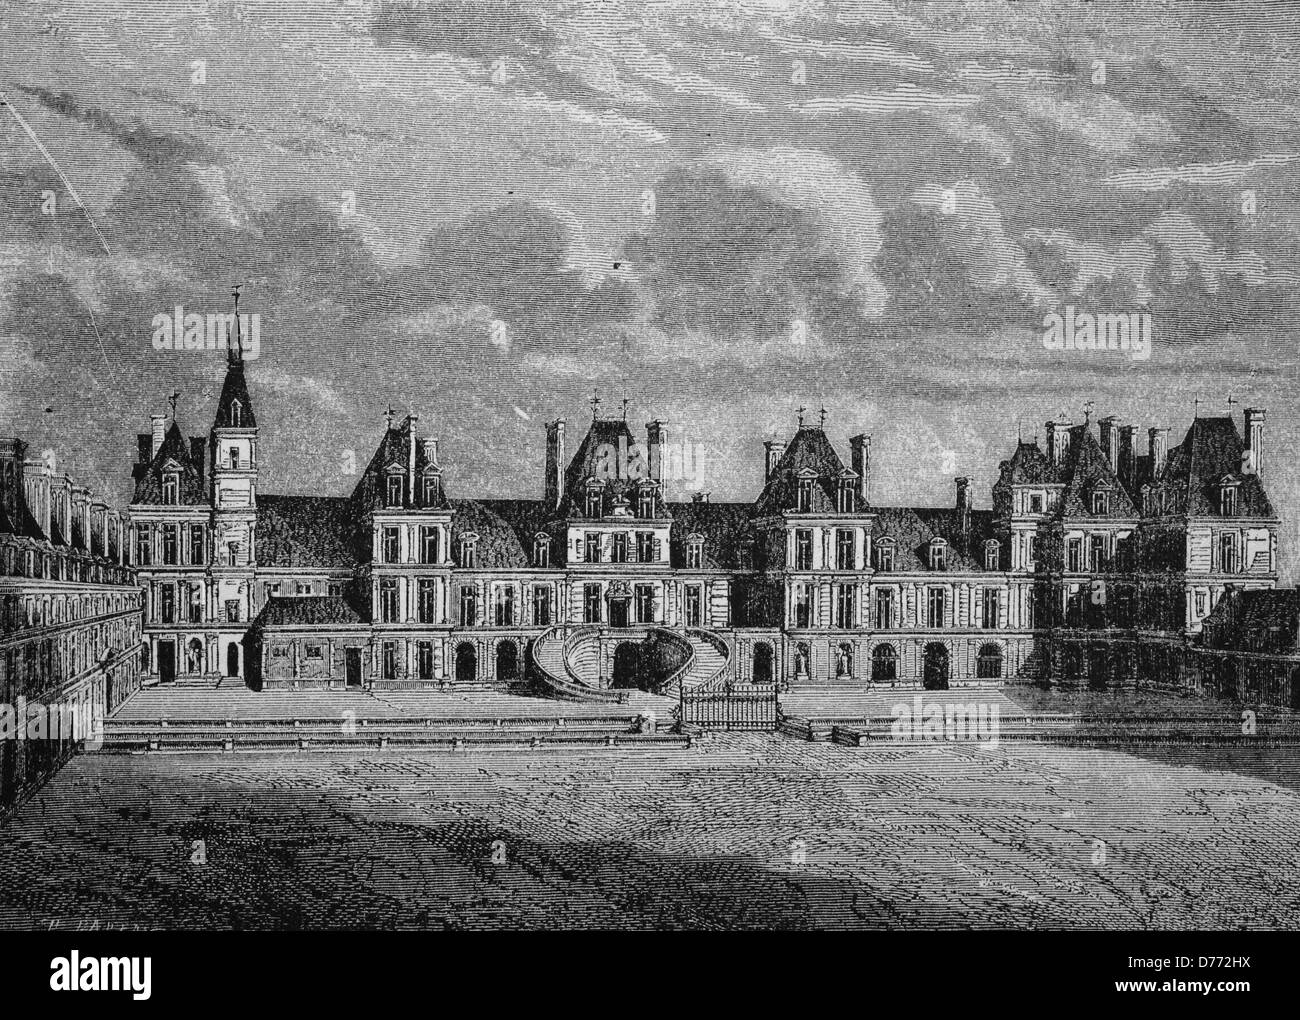 Premier étage (first floor), Château de Fontainebleau, France (circa 1900).